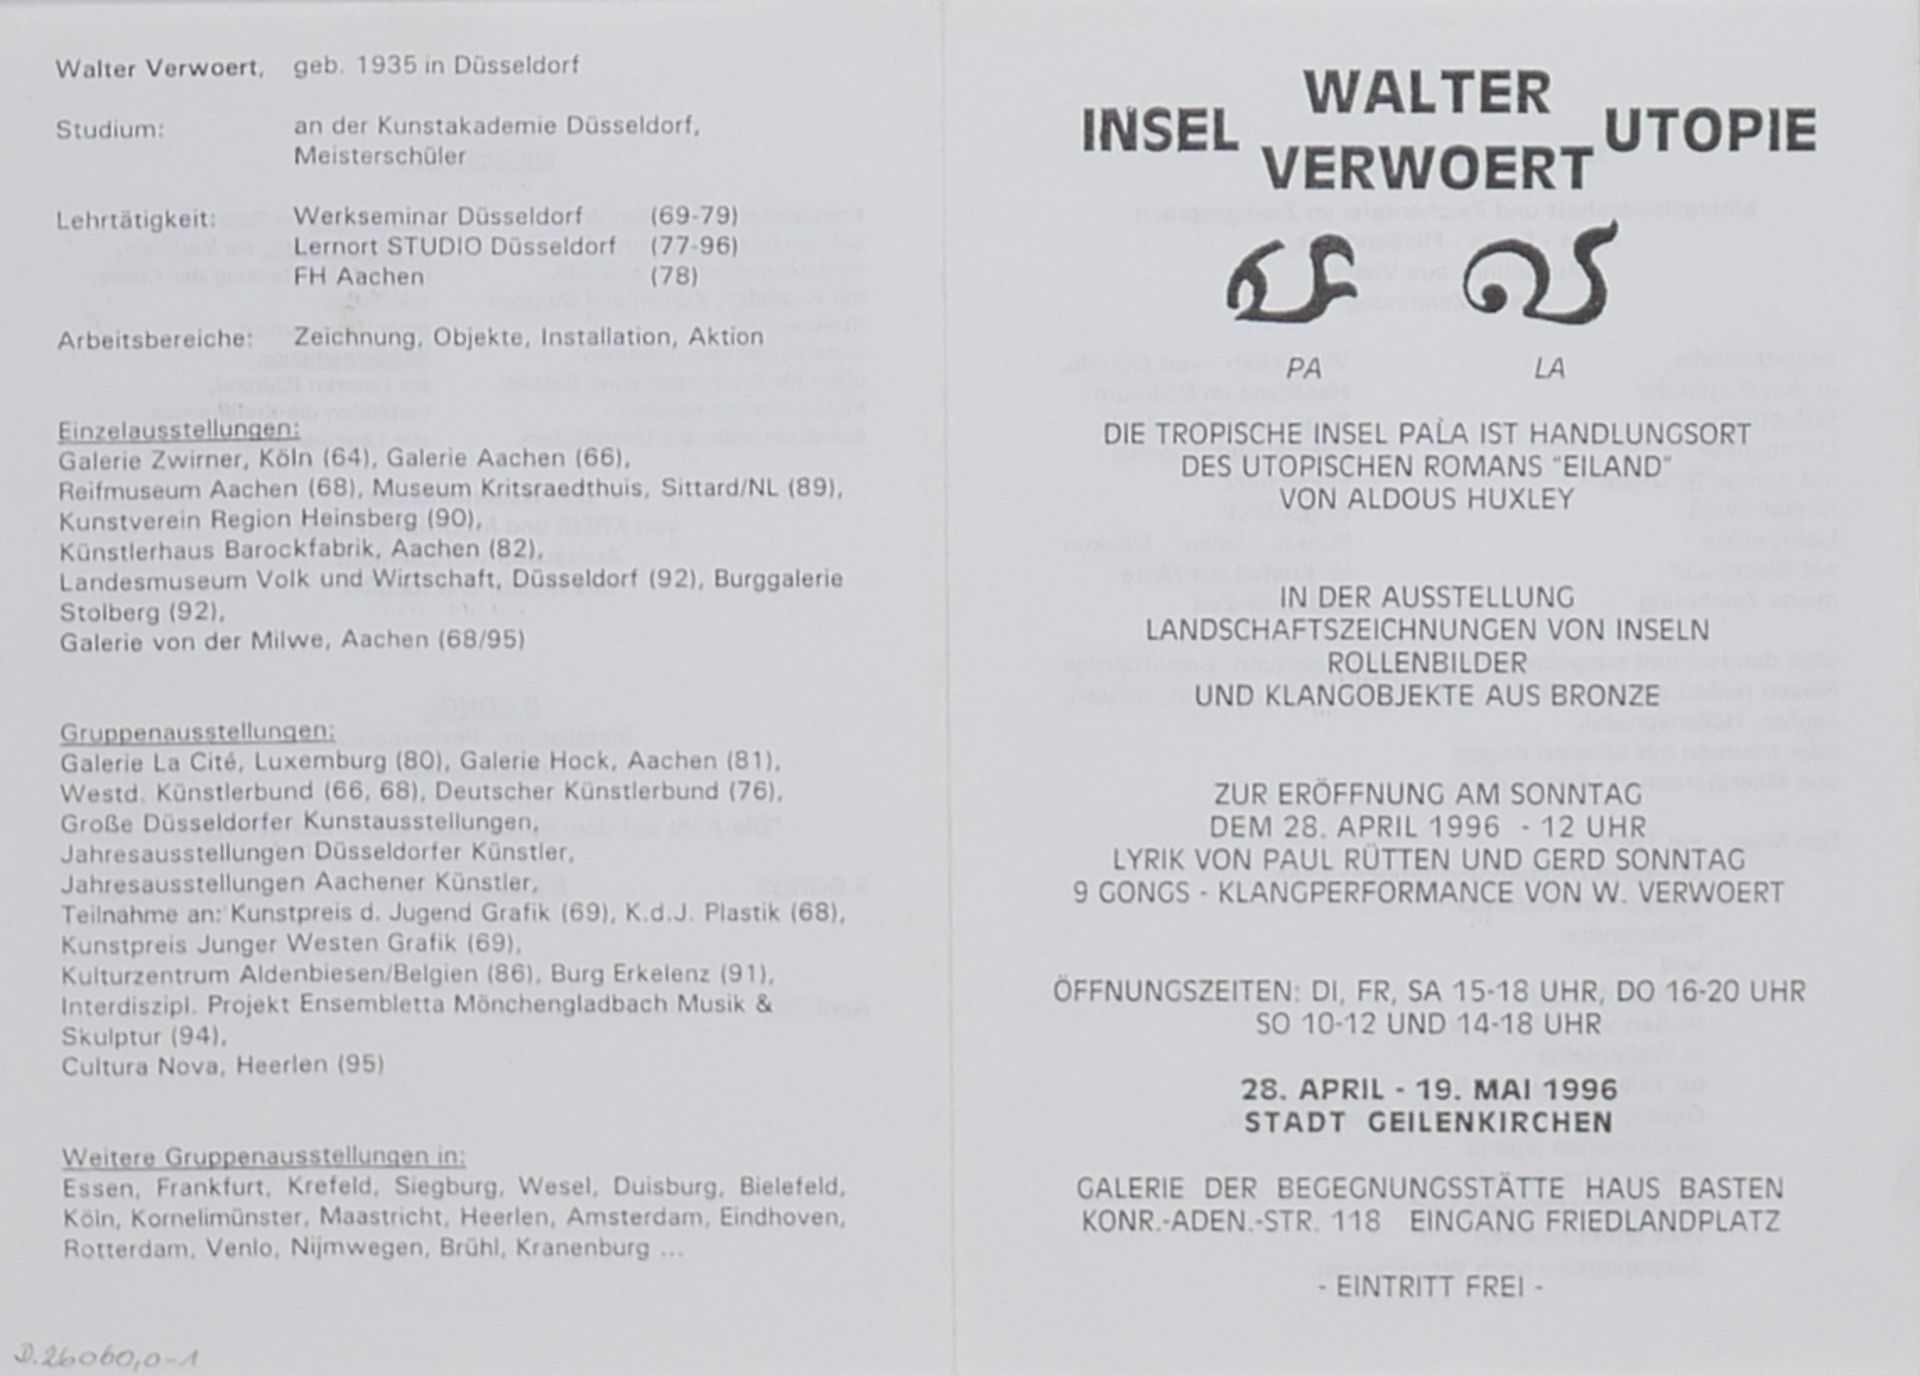 Verwoert, Walter (geb. 1935 in Düsseldorf), - Bild 2 aus 4